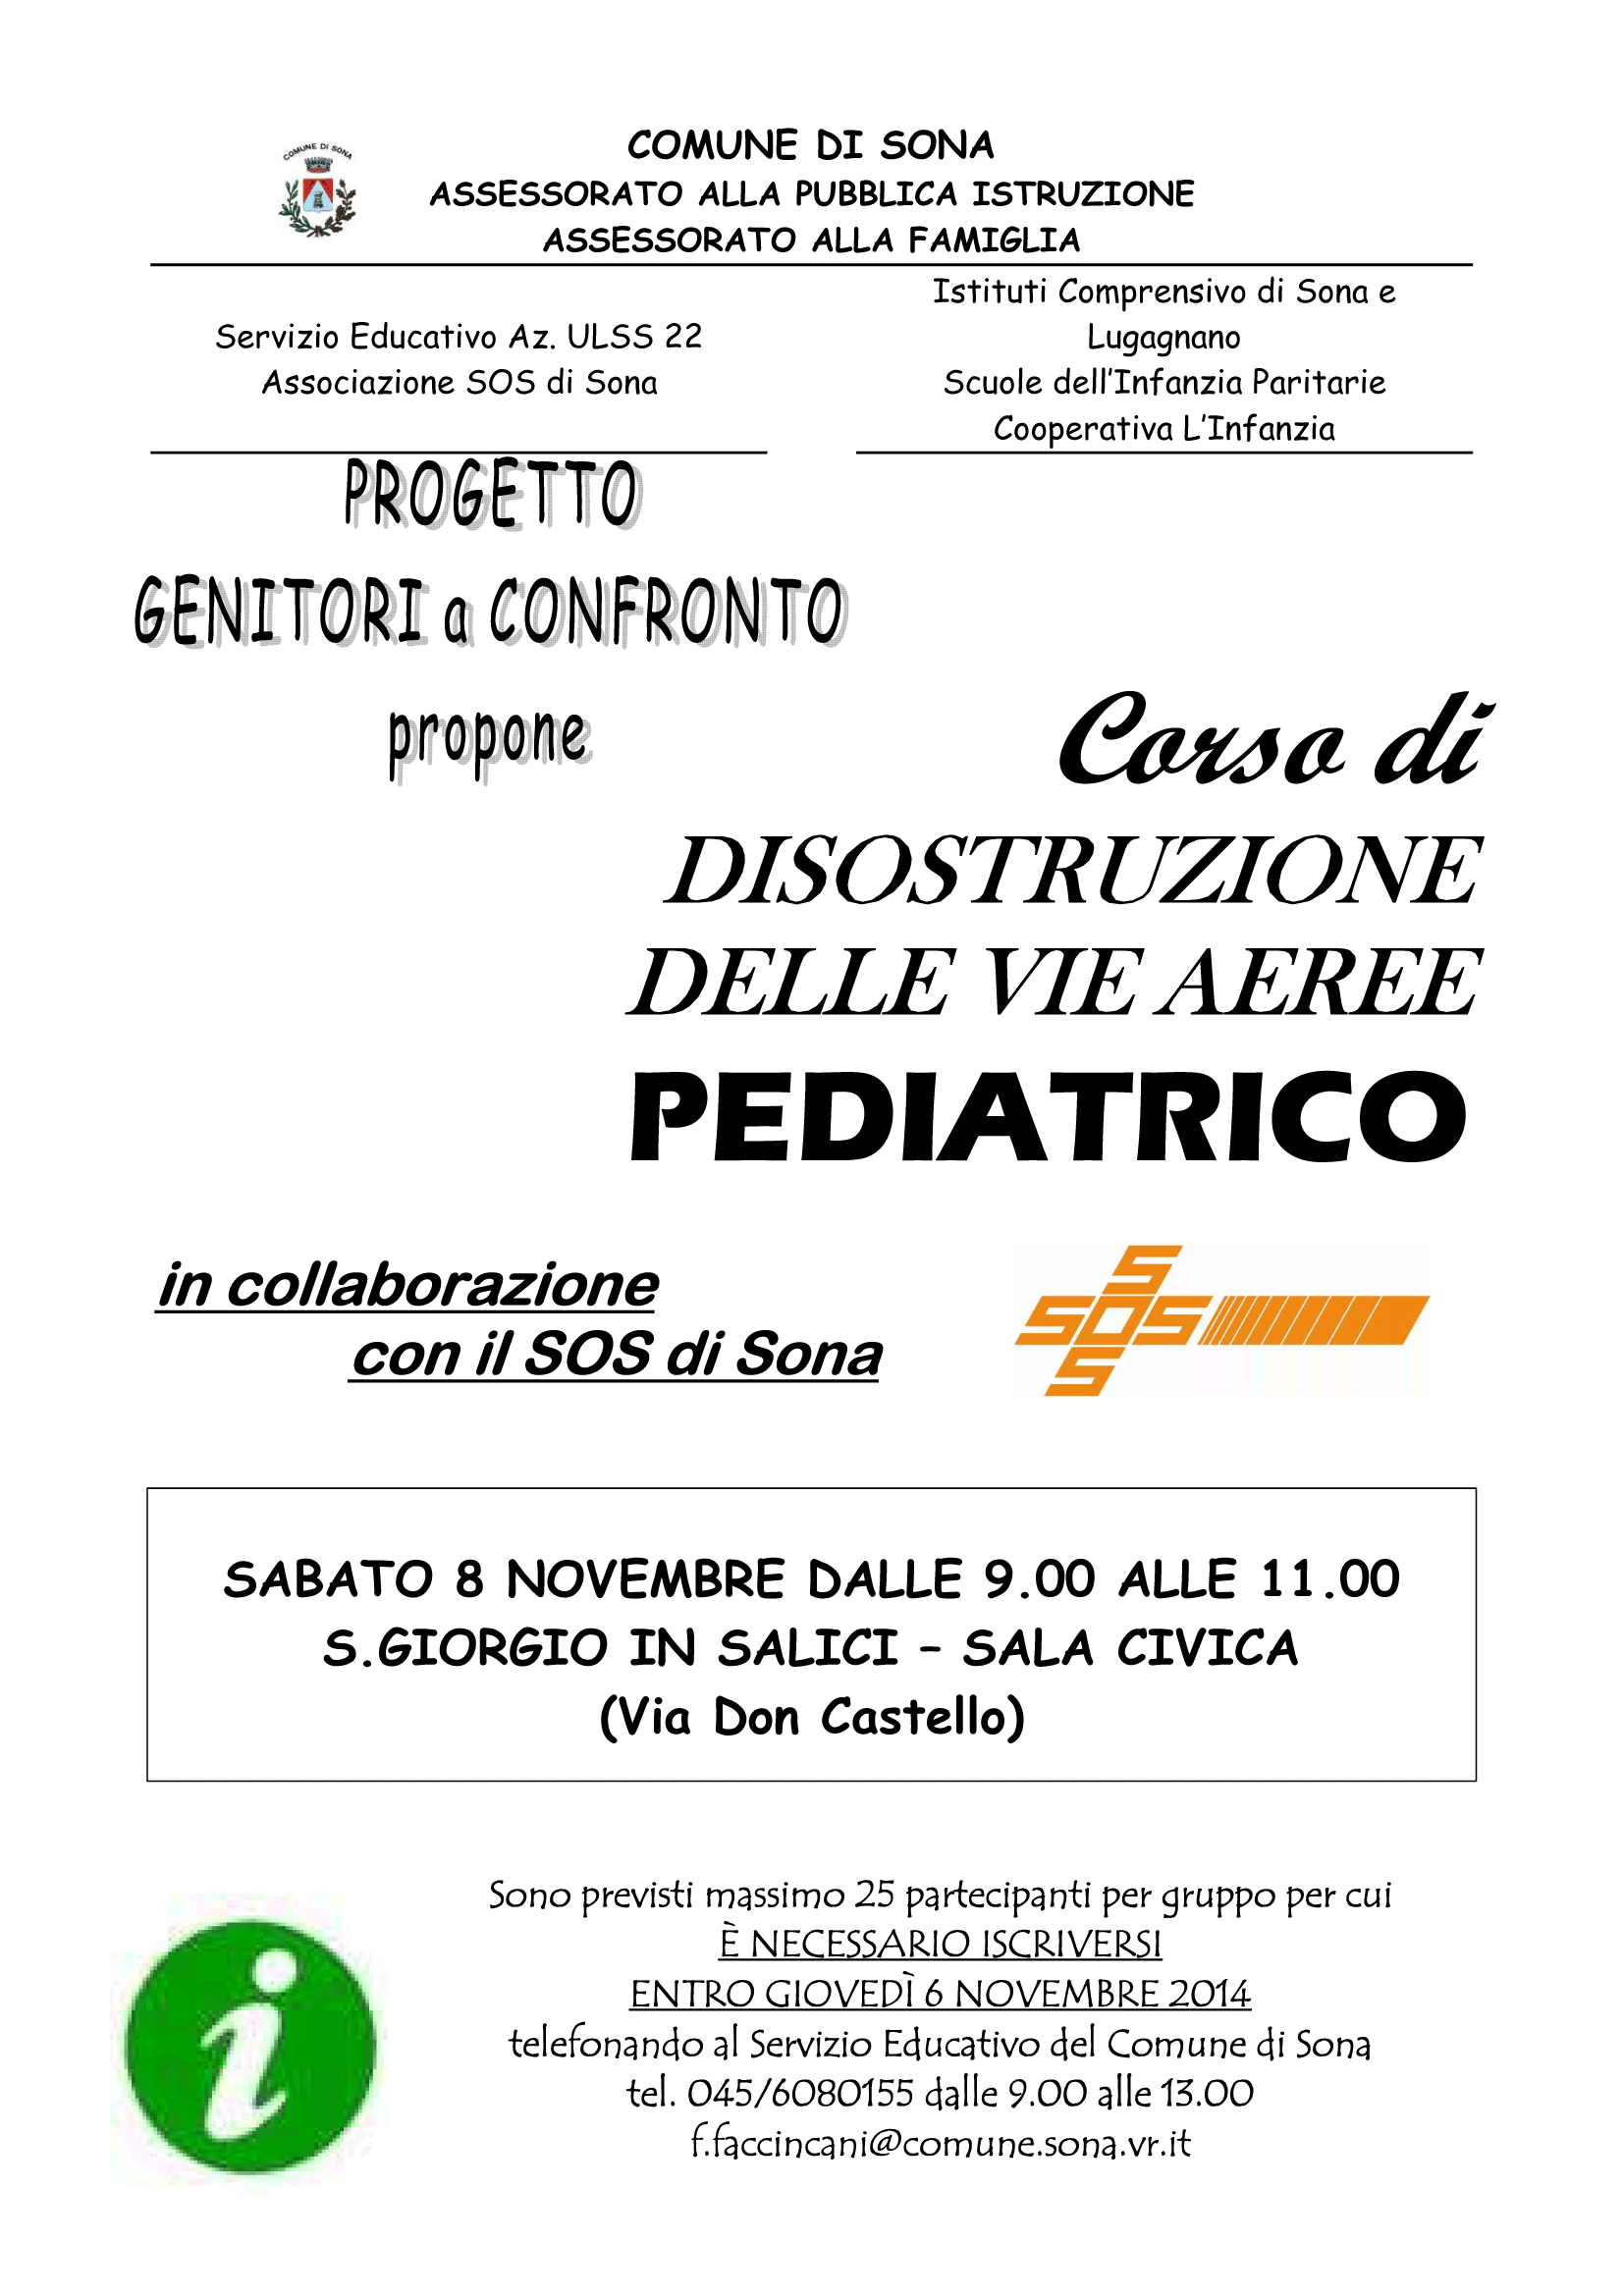 Volantino dispostruzione pediatrica a S. Giorgio